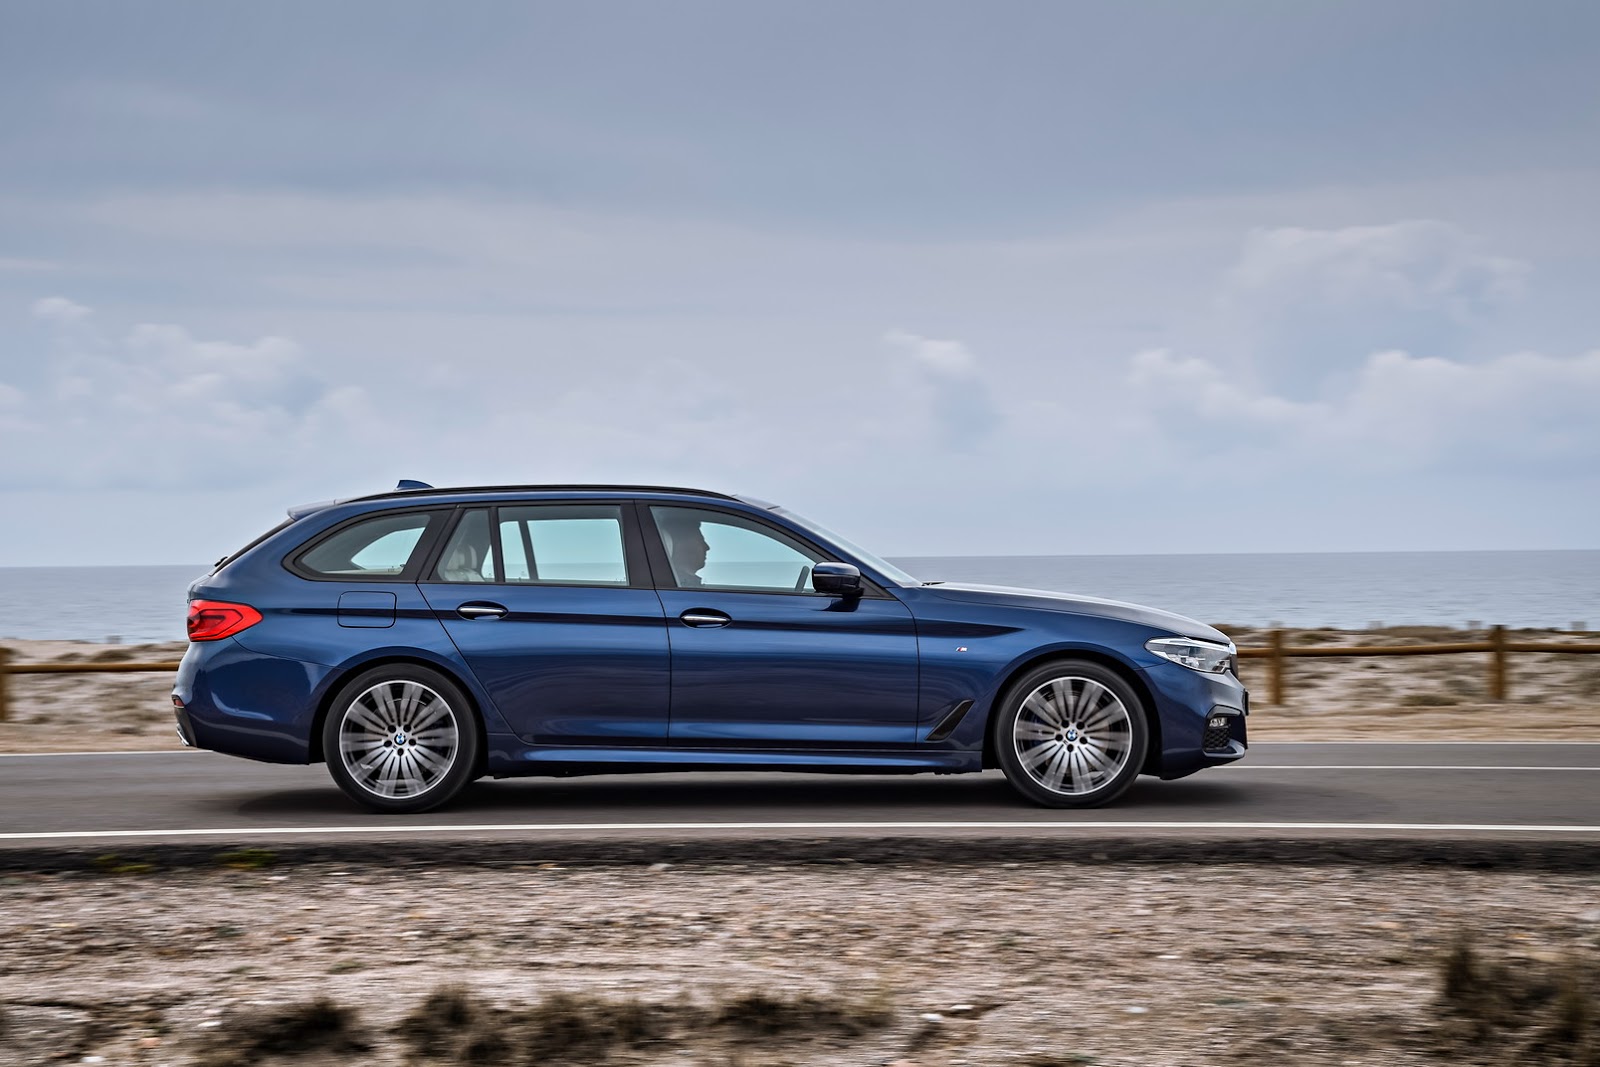 2017 BMW 5 Serisi Touring Resim Galerisi